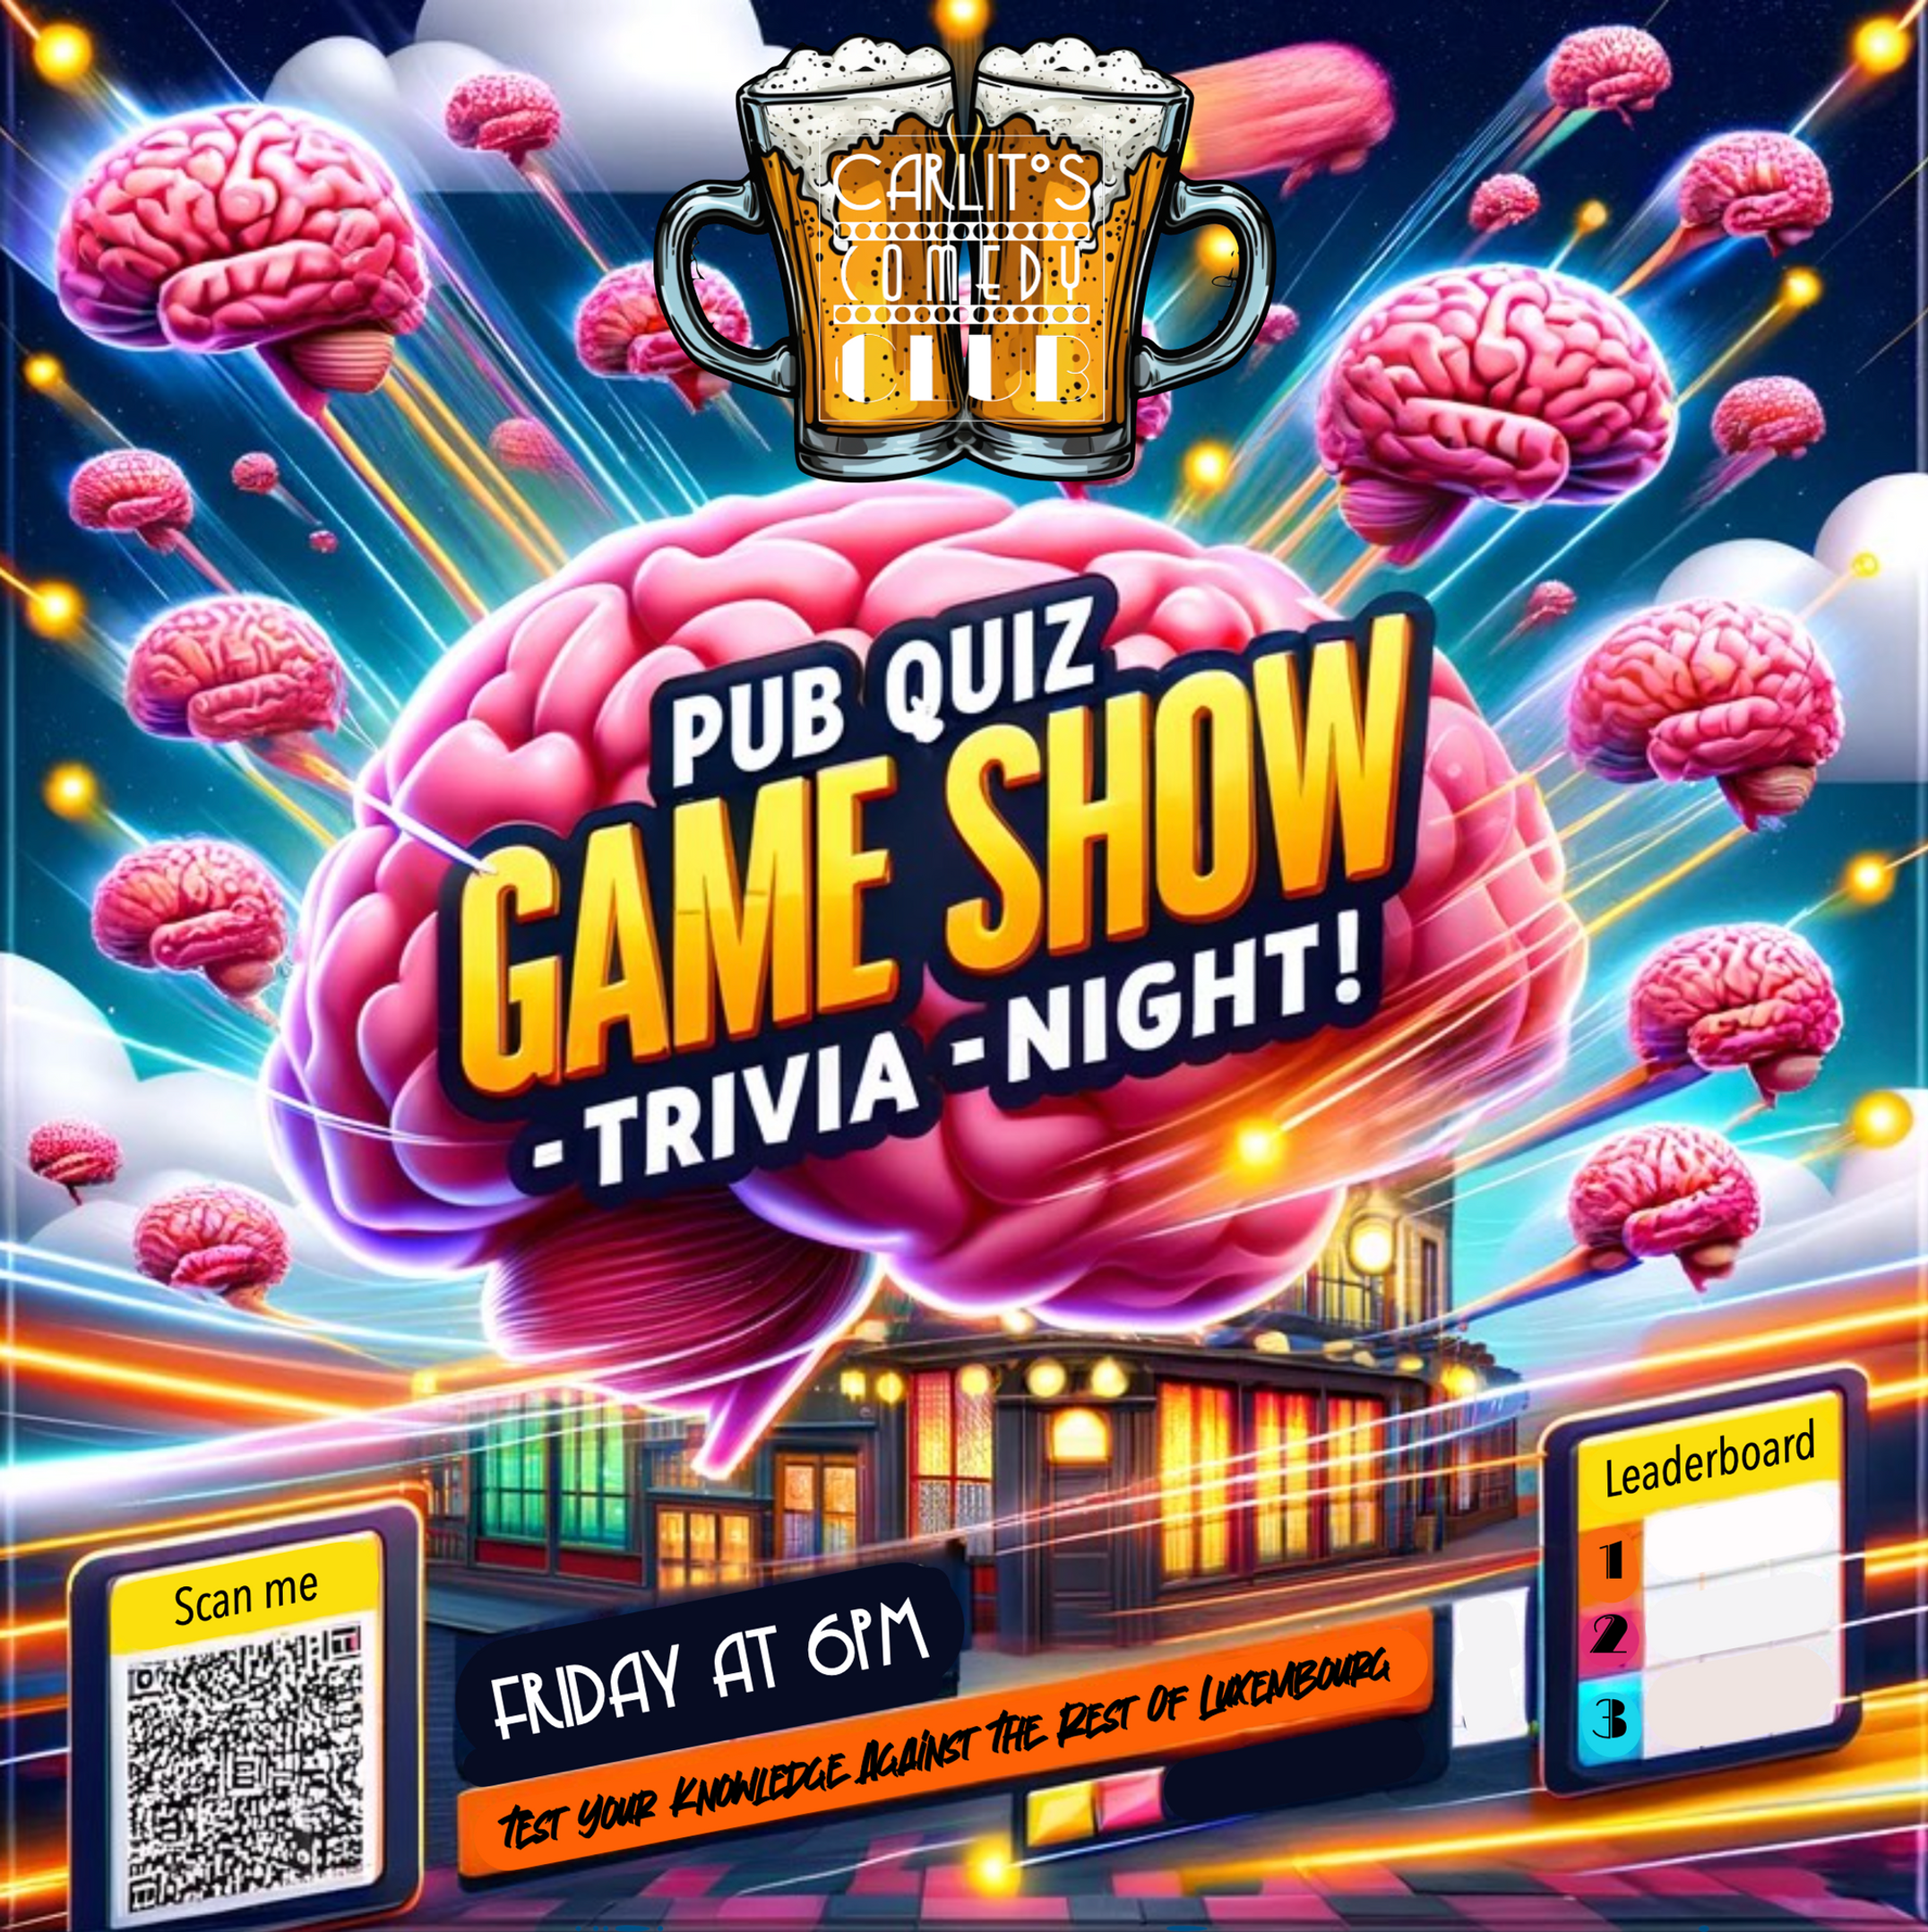 Pub quiz game show trivia night!